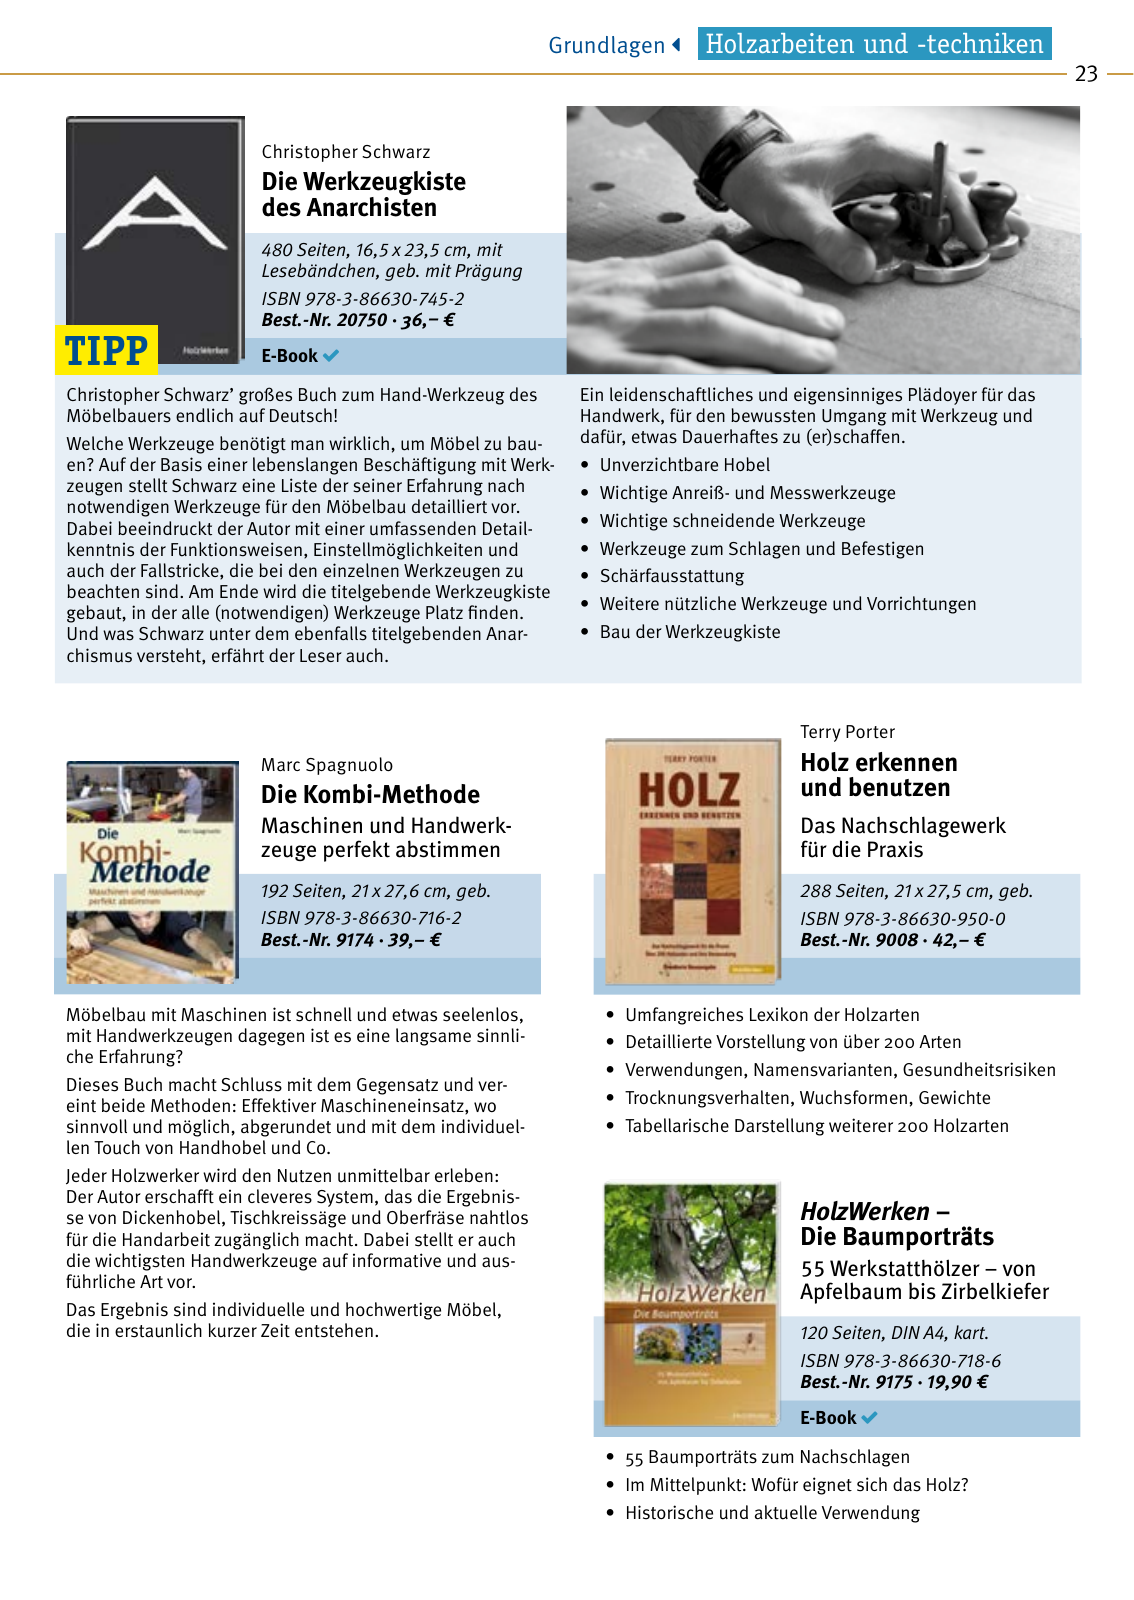 Vorschau HolzWerken Katalog 2021 Seite 23